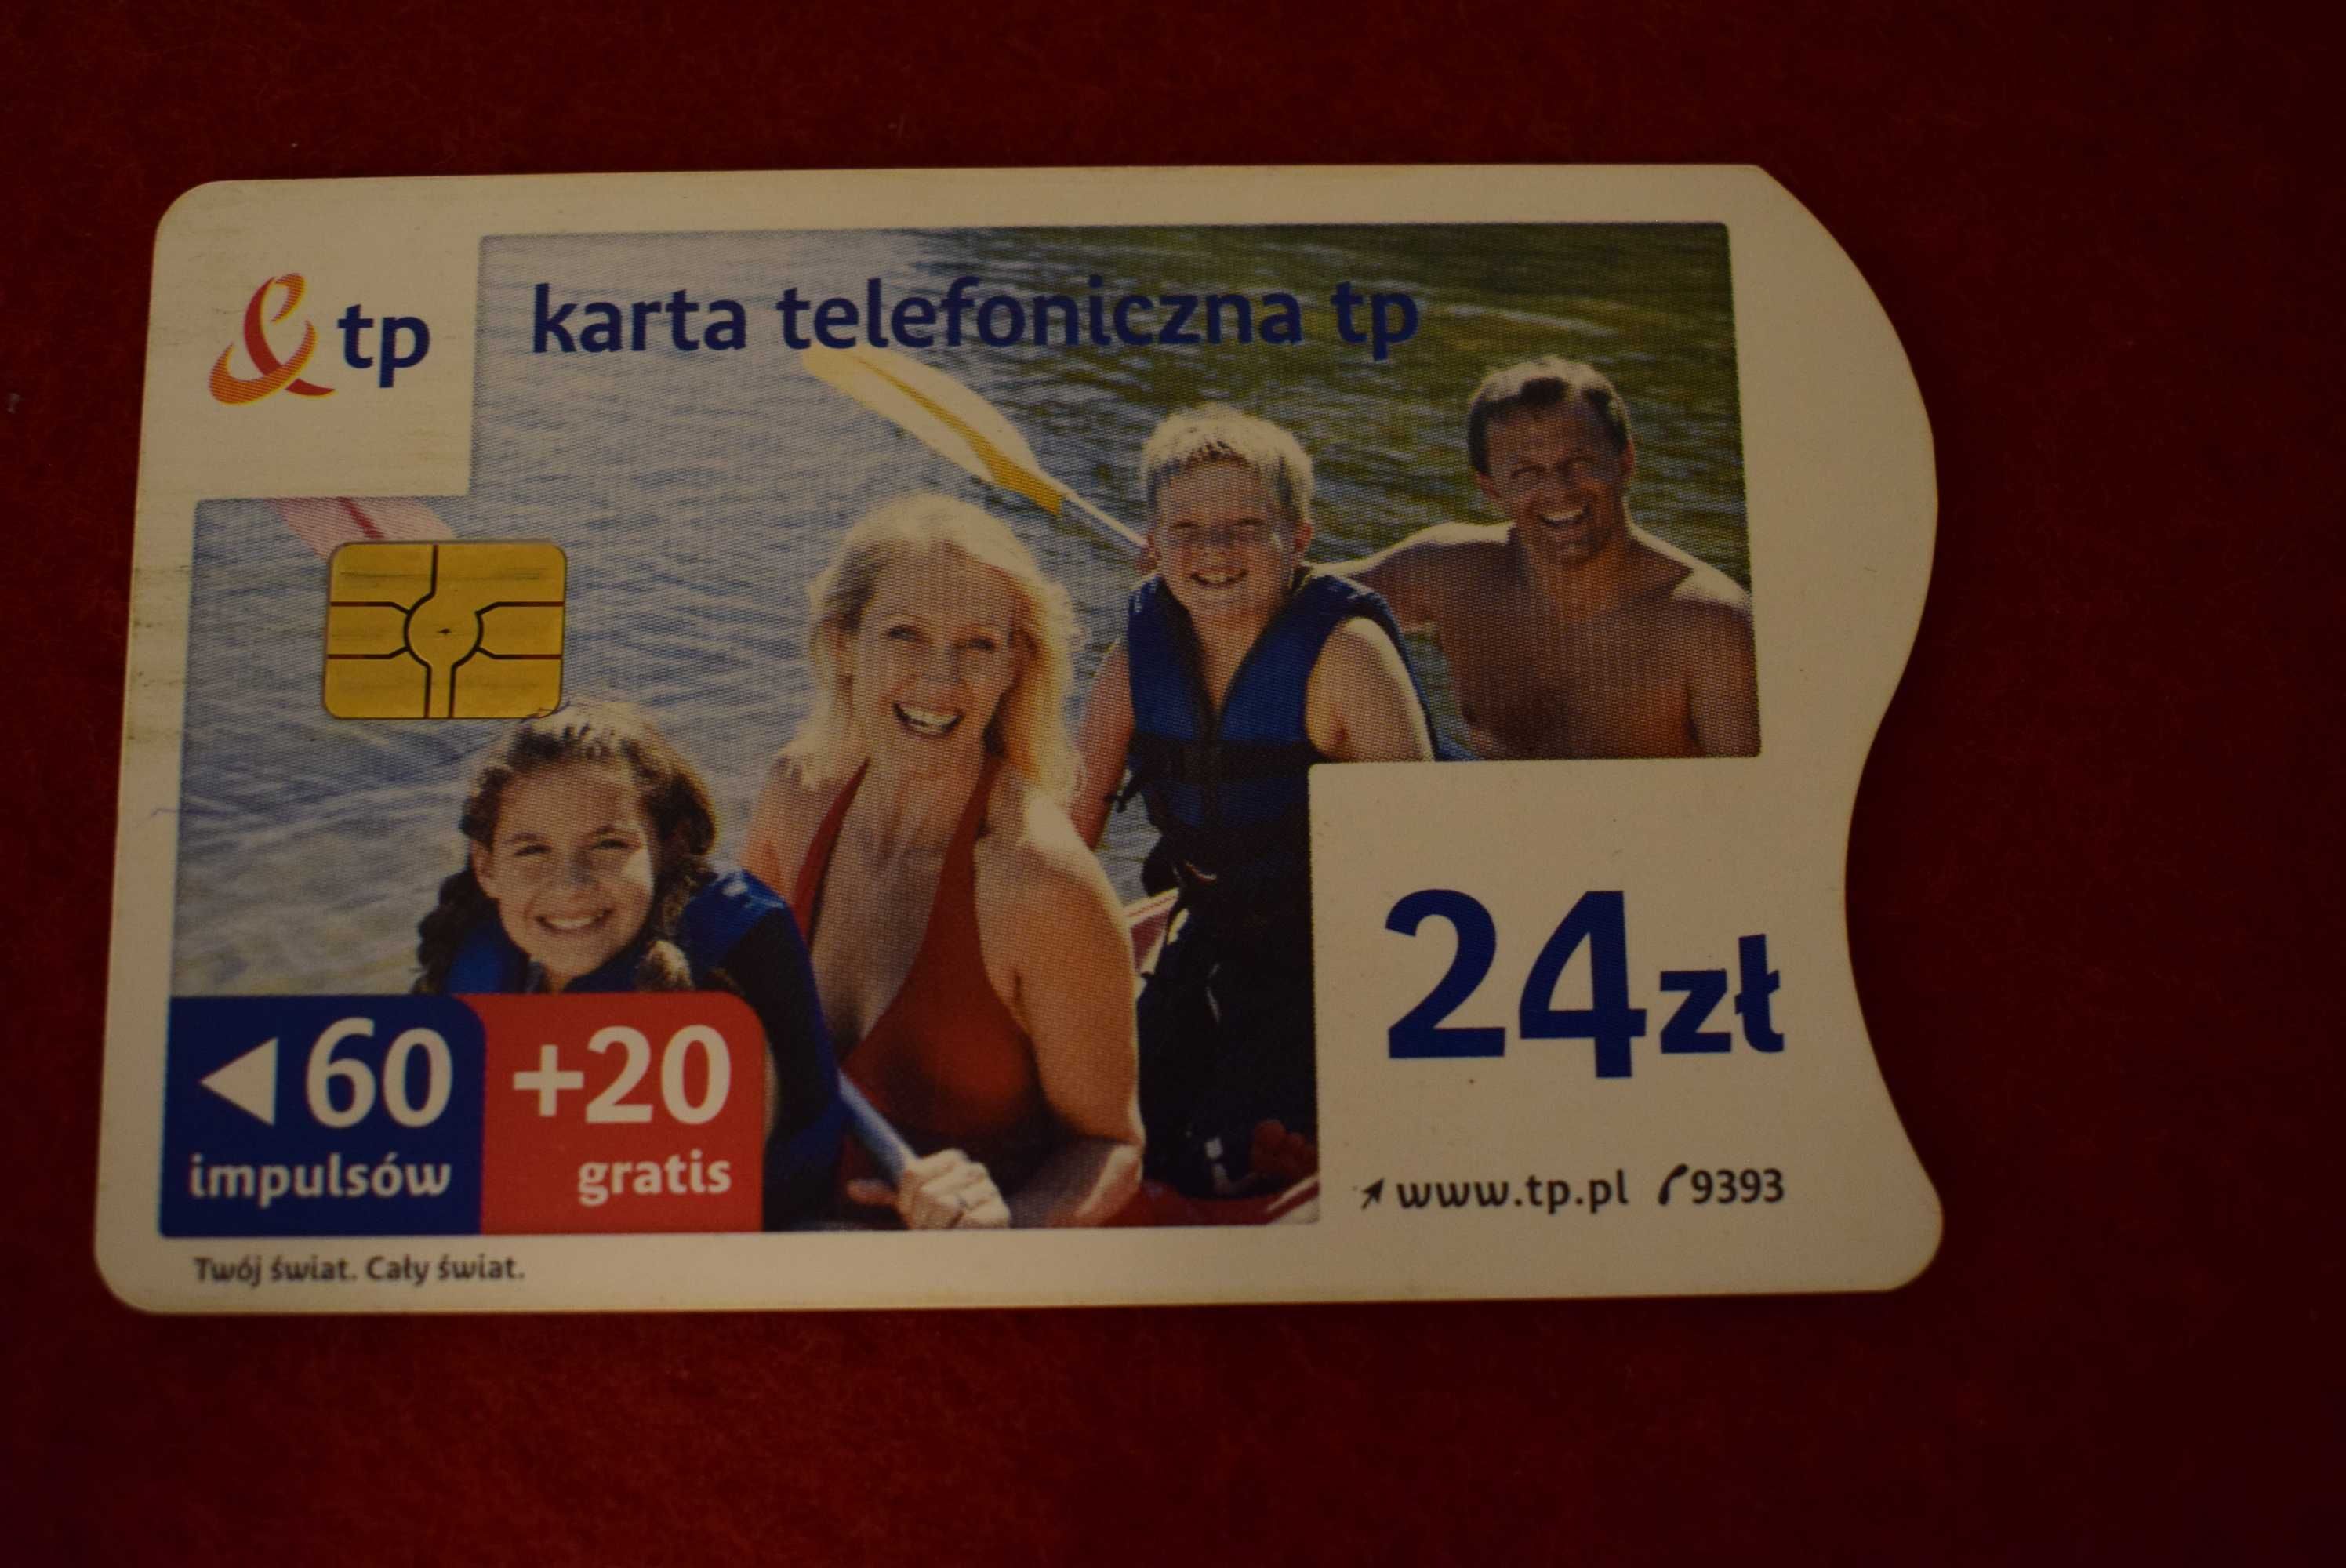 Karty telefoniczne TP  w tym jedna nieużywana w foli.